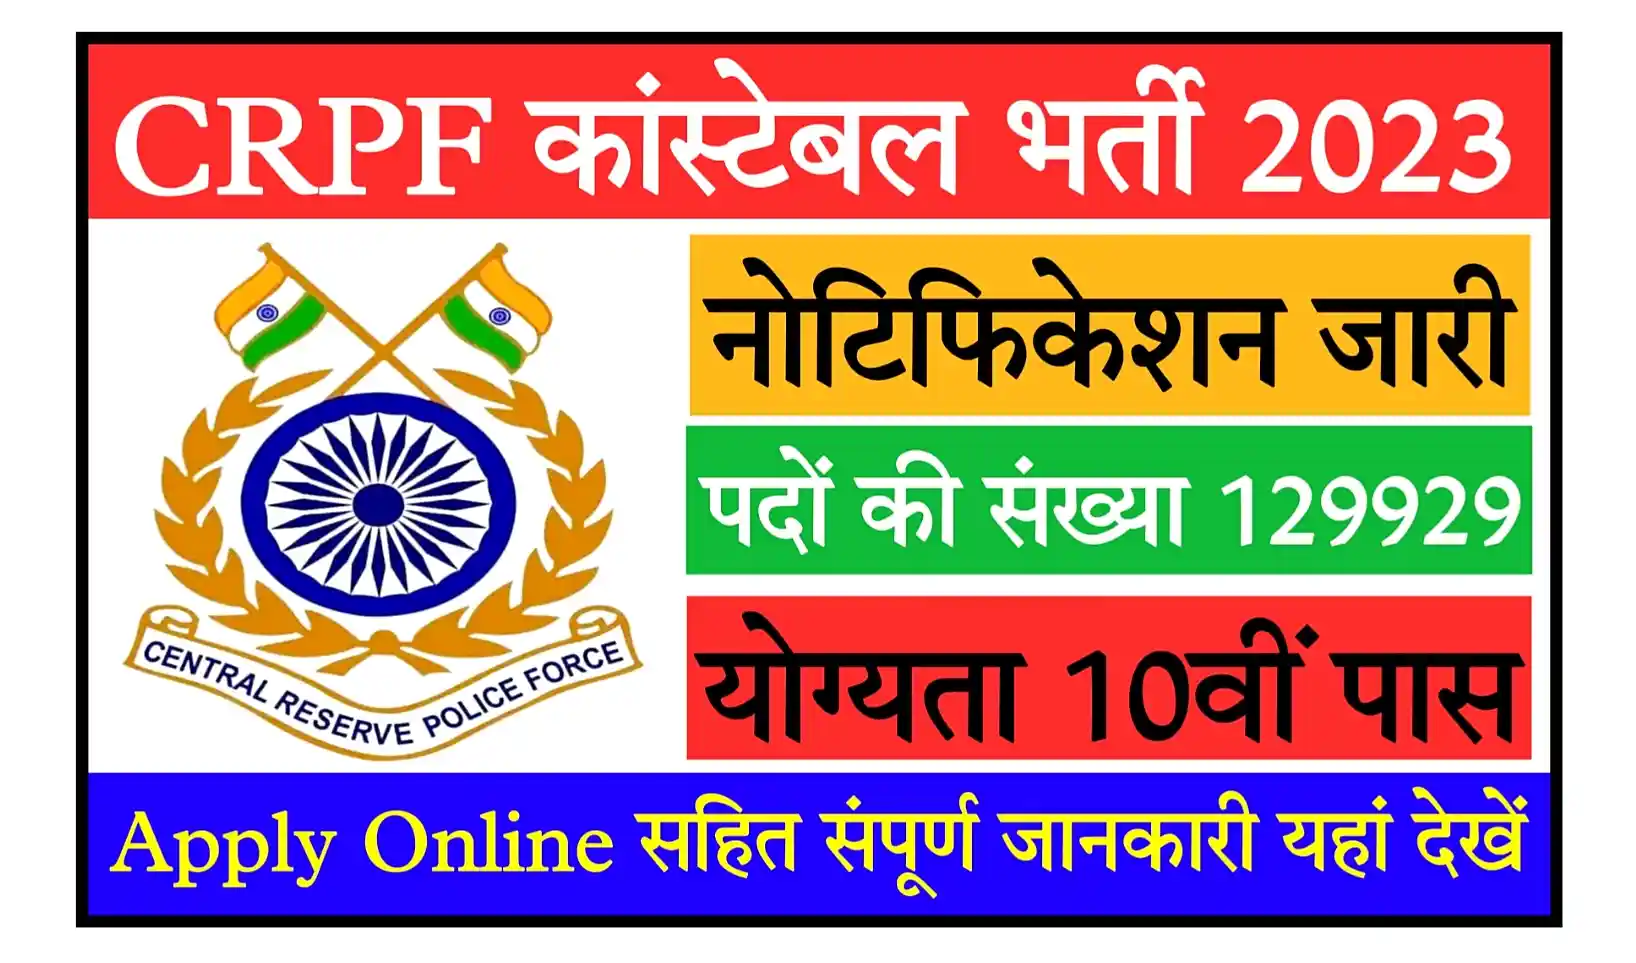 CRPF Constable Bharti 2023 Notification, Apply Online 129929 Posts सीआरपीएफ कांस्टेबल भर्ती का बंपर पदों पर नोटिफिकेशन जारी